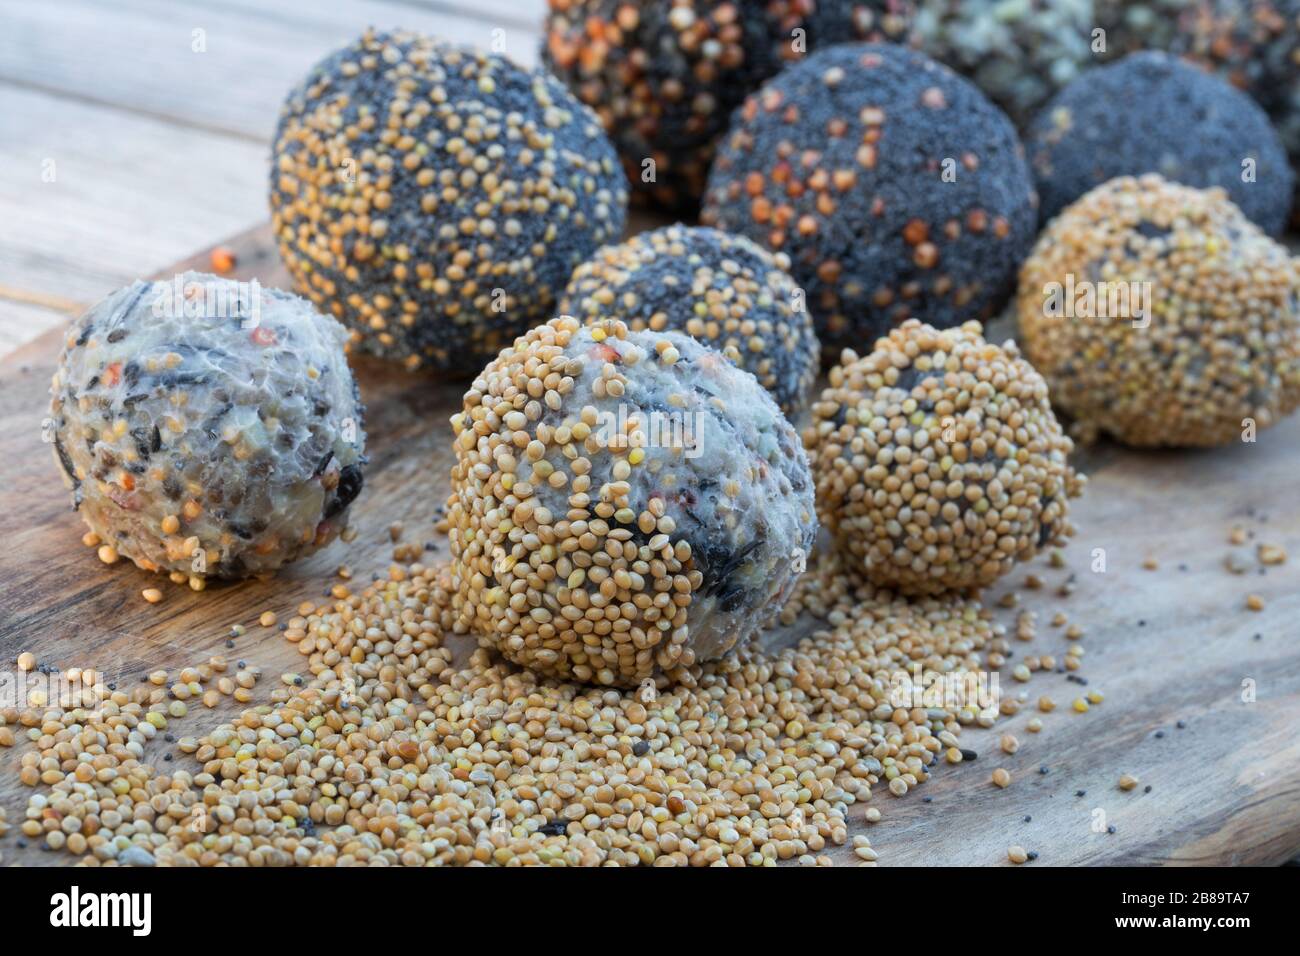 Fatballs faits maison à base de cohuile durcie, graines de tournesol, huile de tournesol et graines et noix mixtes, Allemagne Banque D'Images